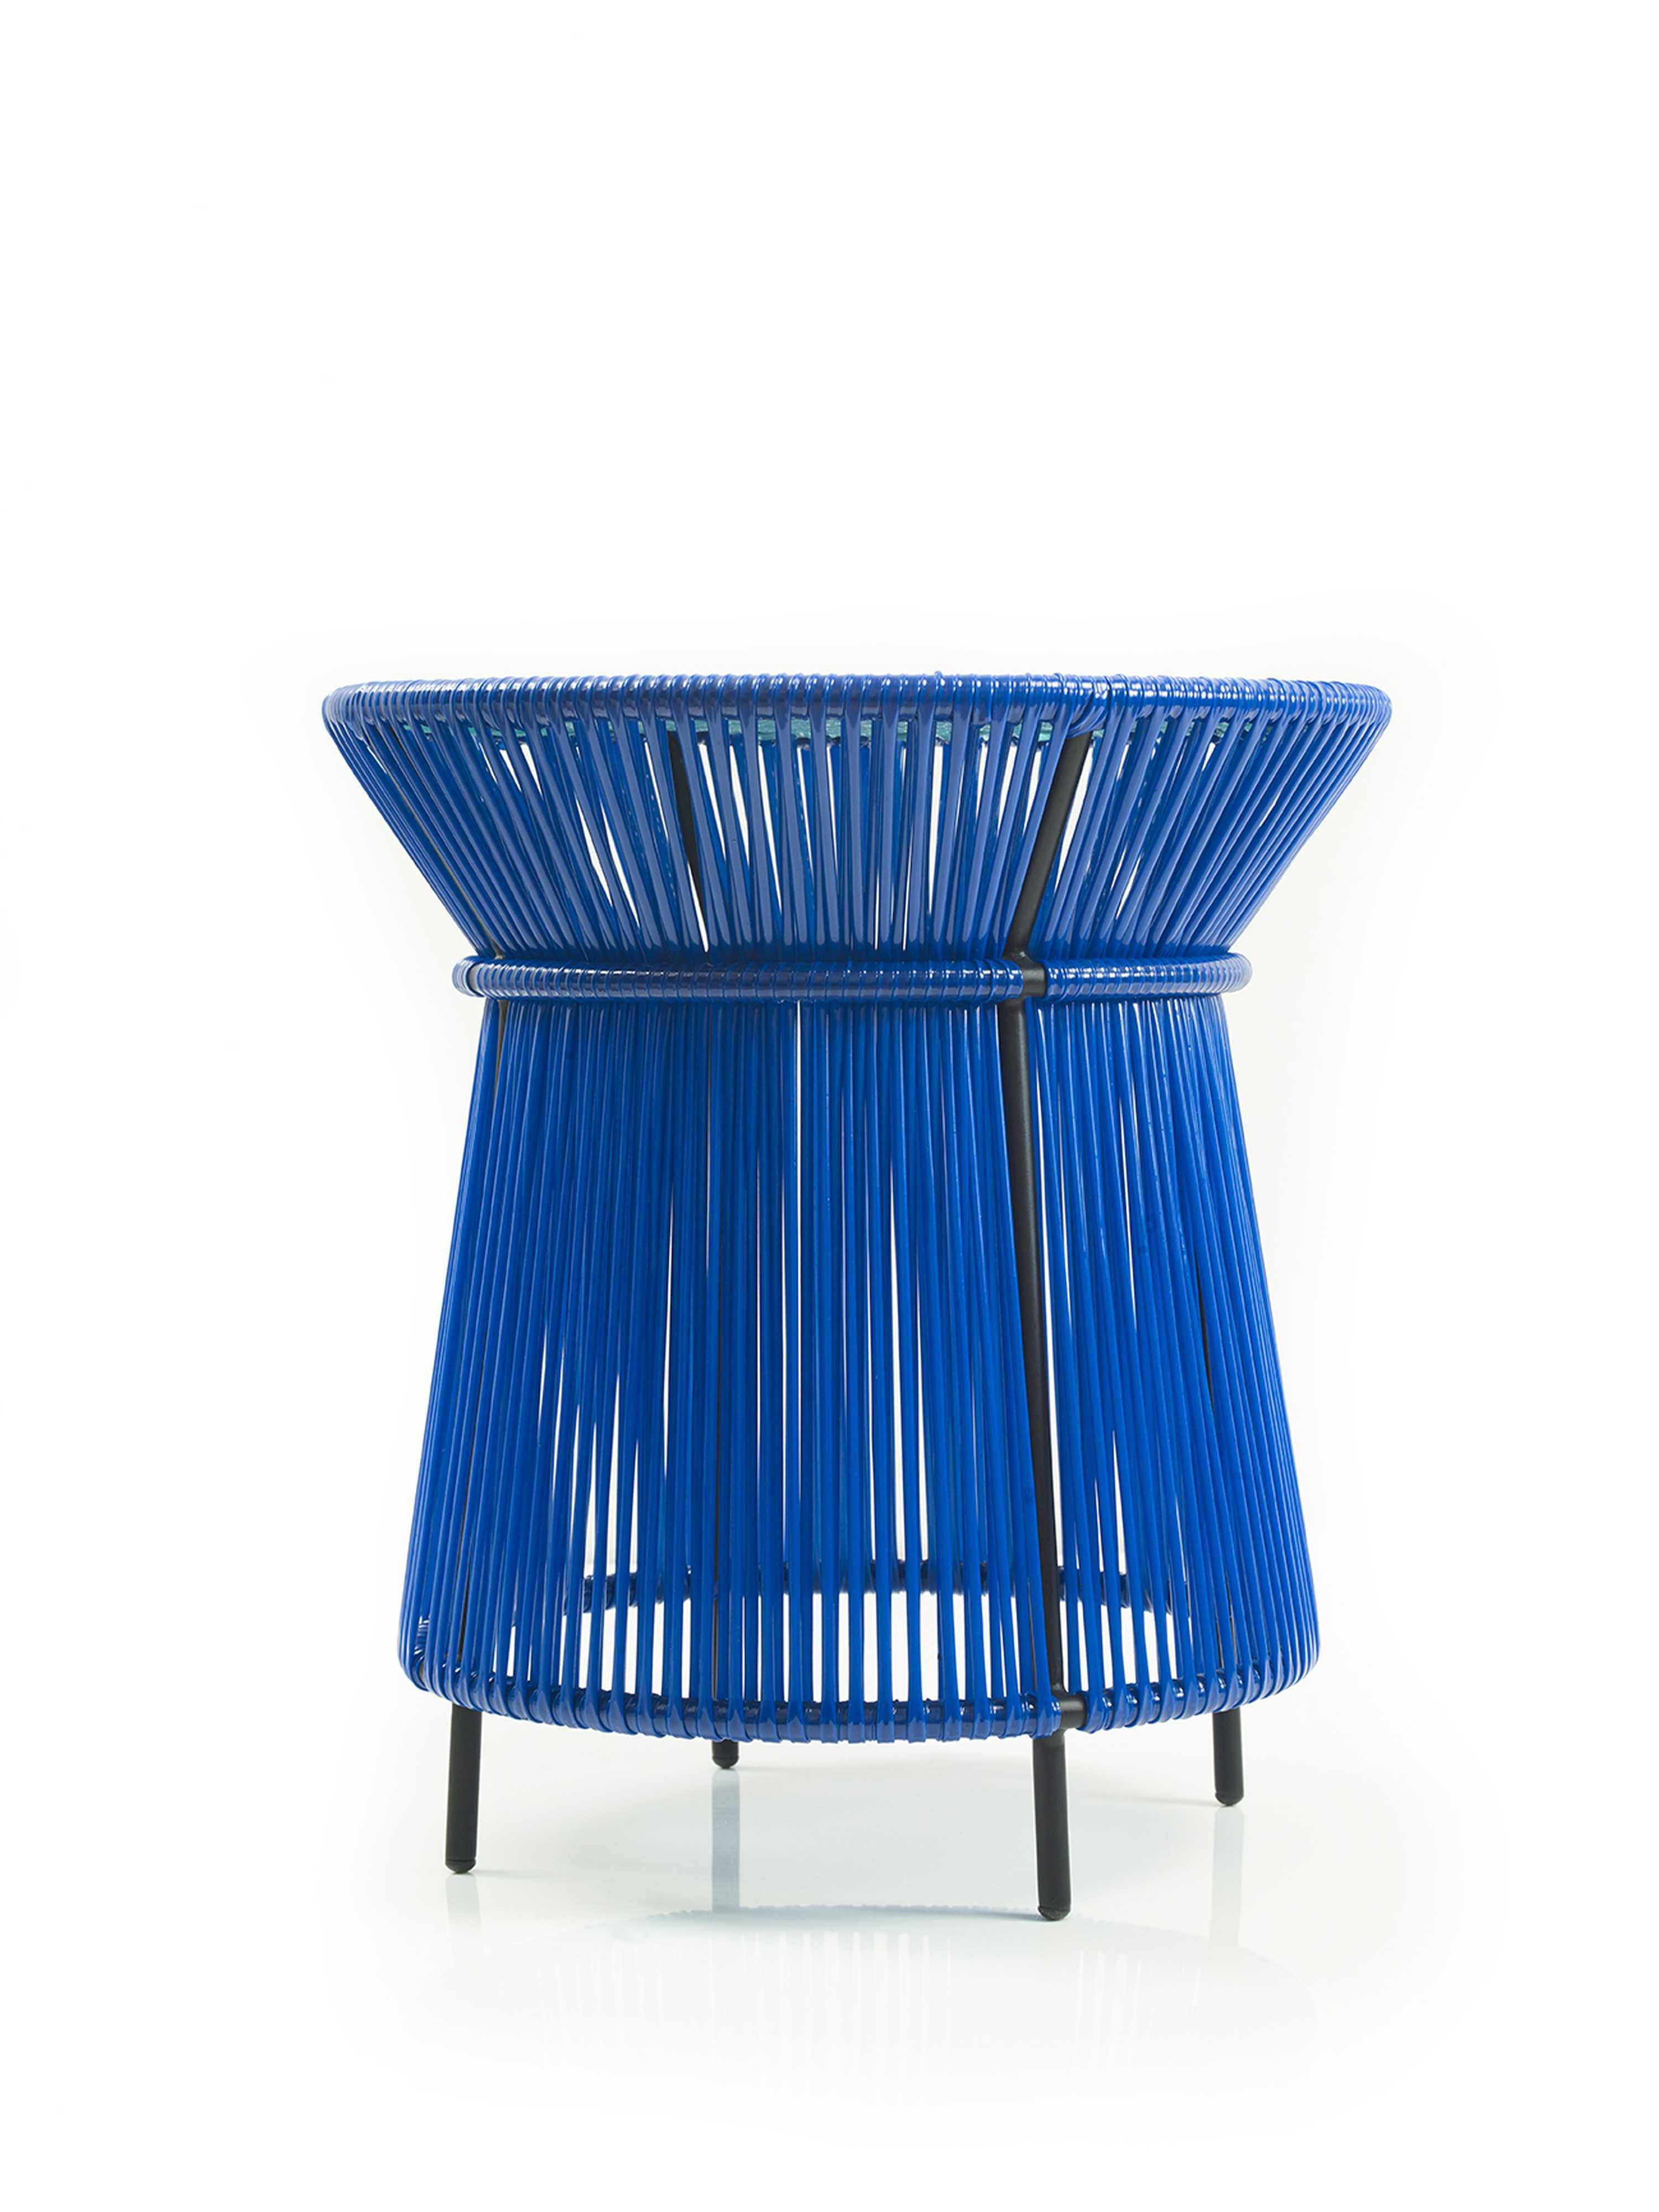 Modern Blue Caribe High Table by Sebastian Herkner